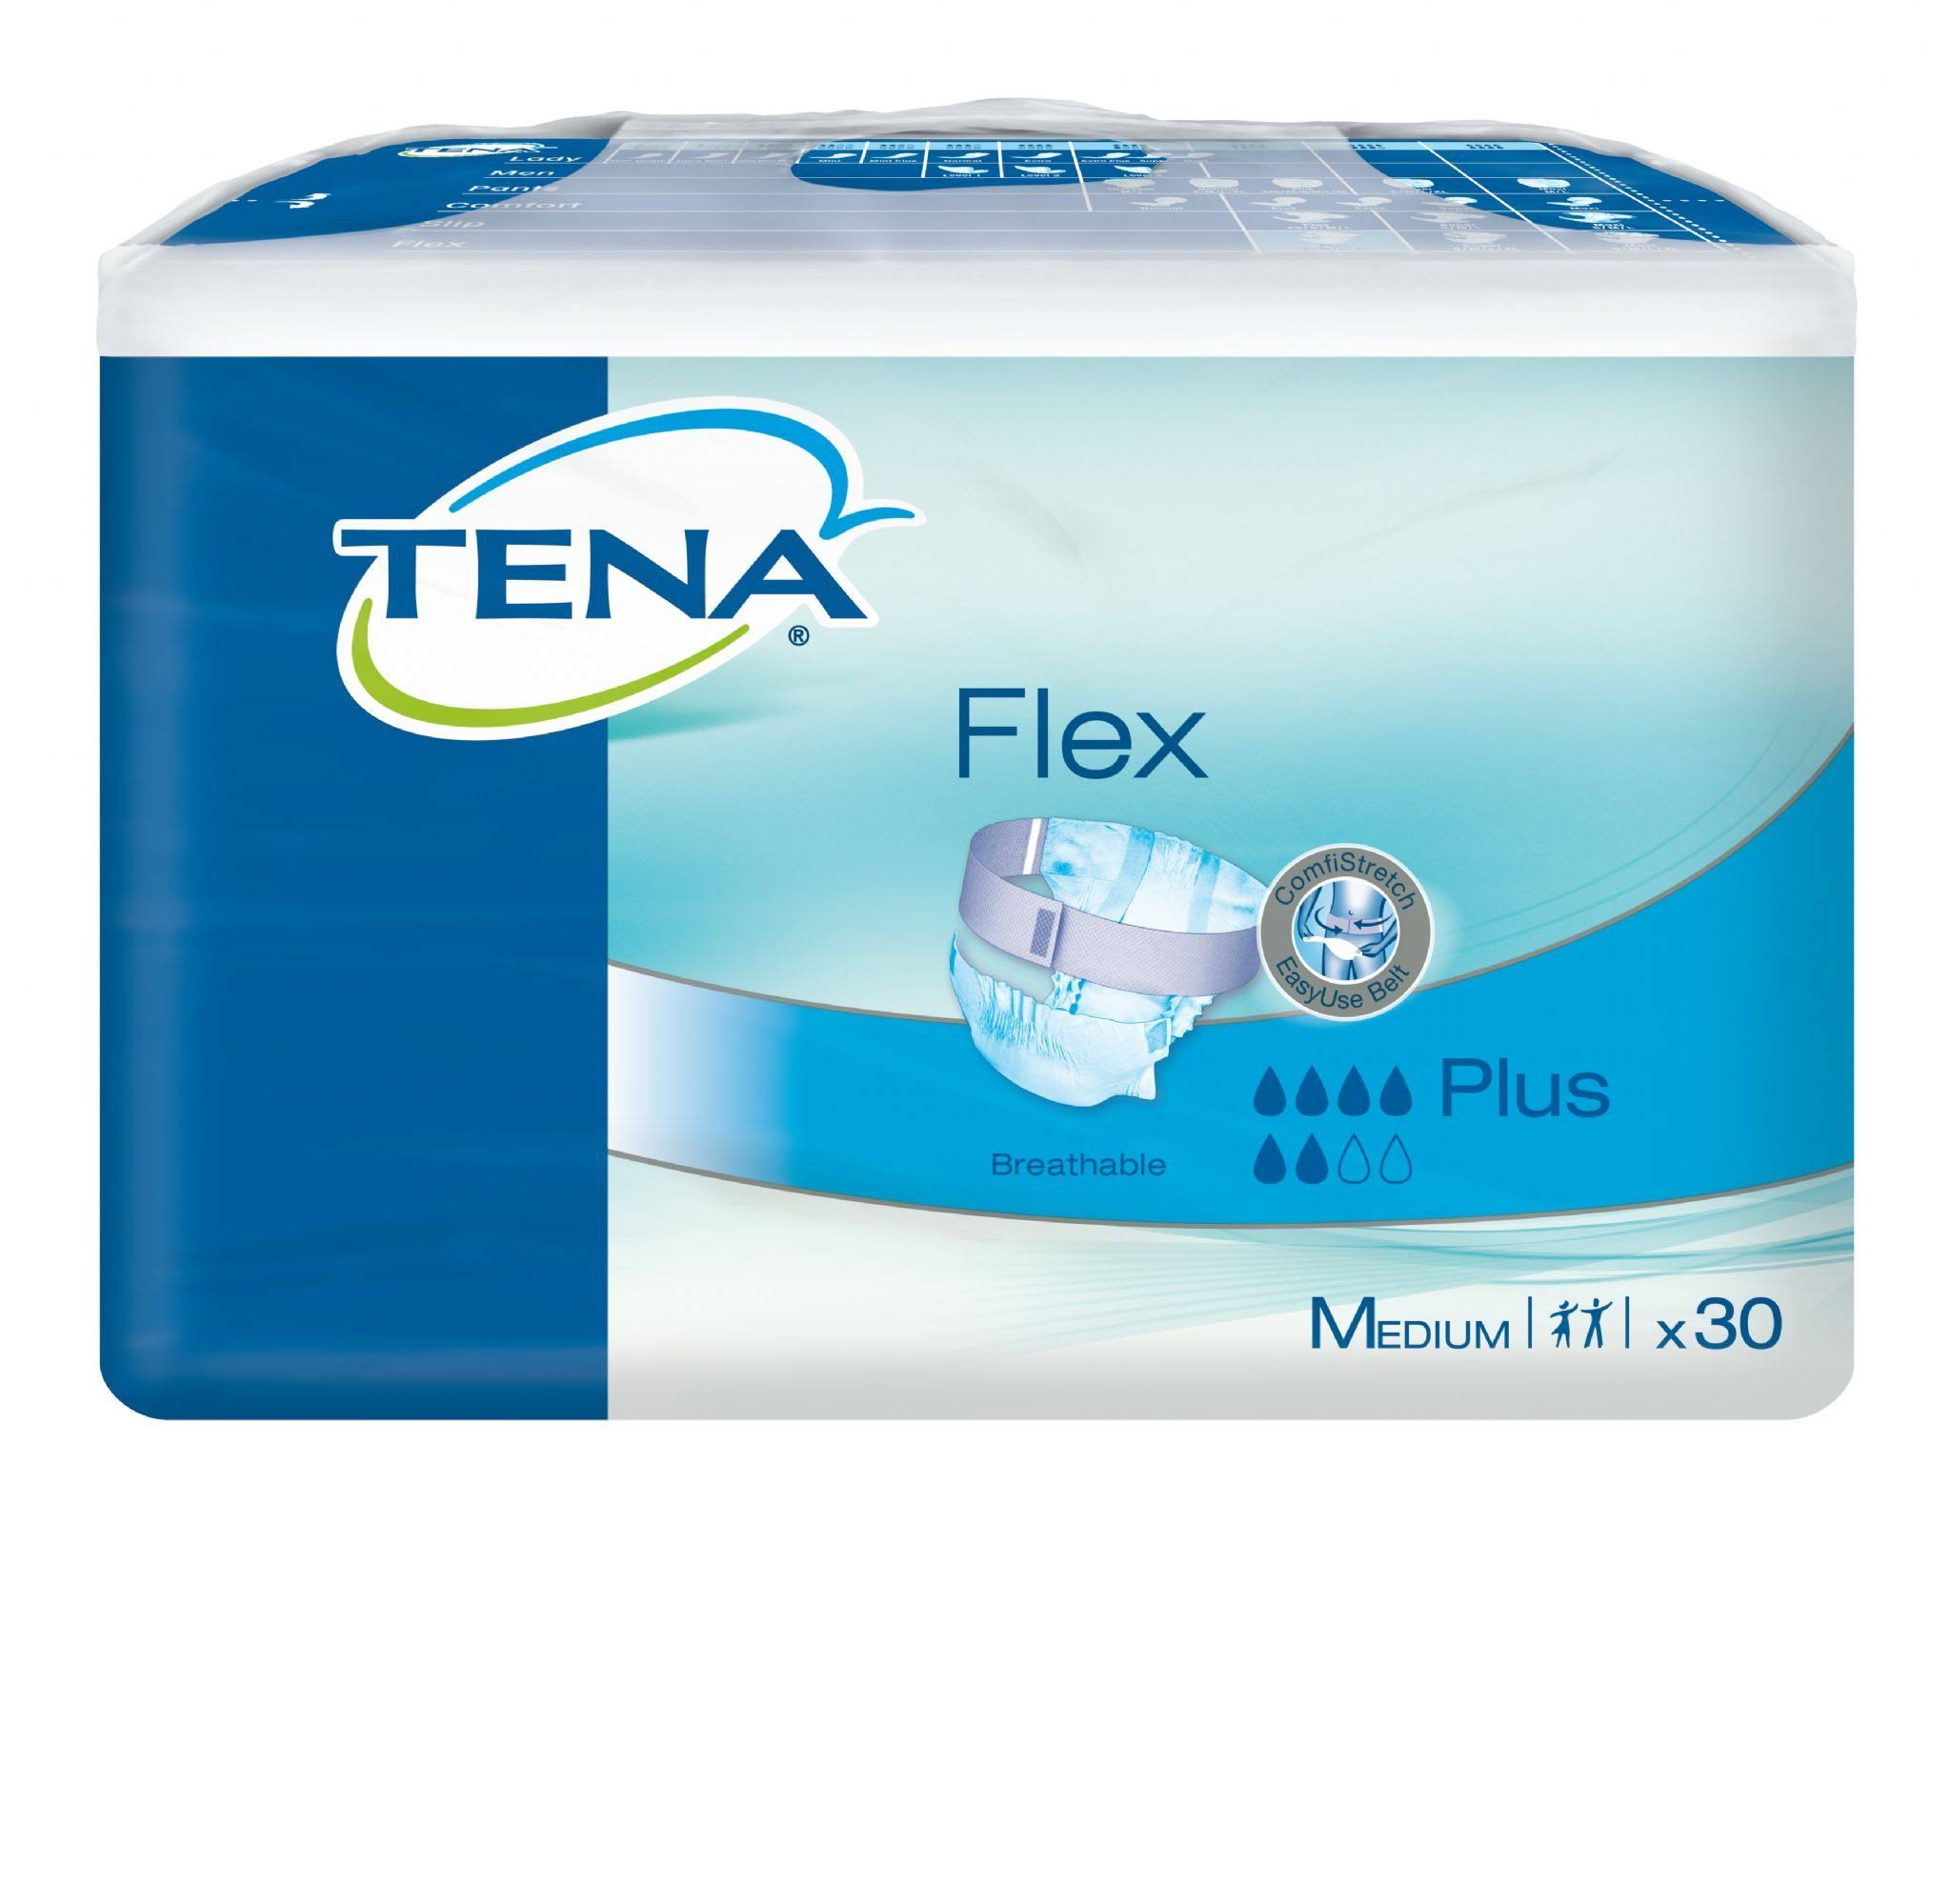 Tena Flex Plus Pads - Medium, 30 Pack